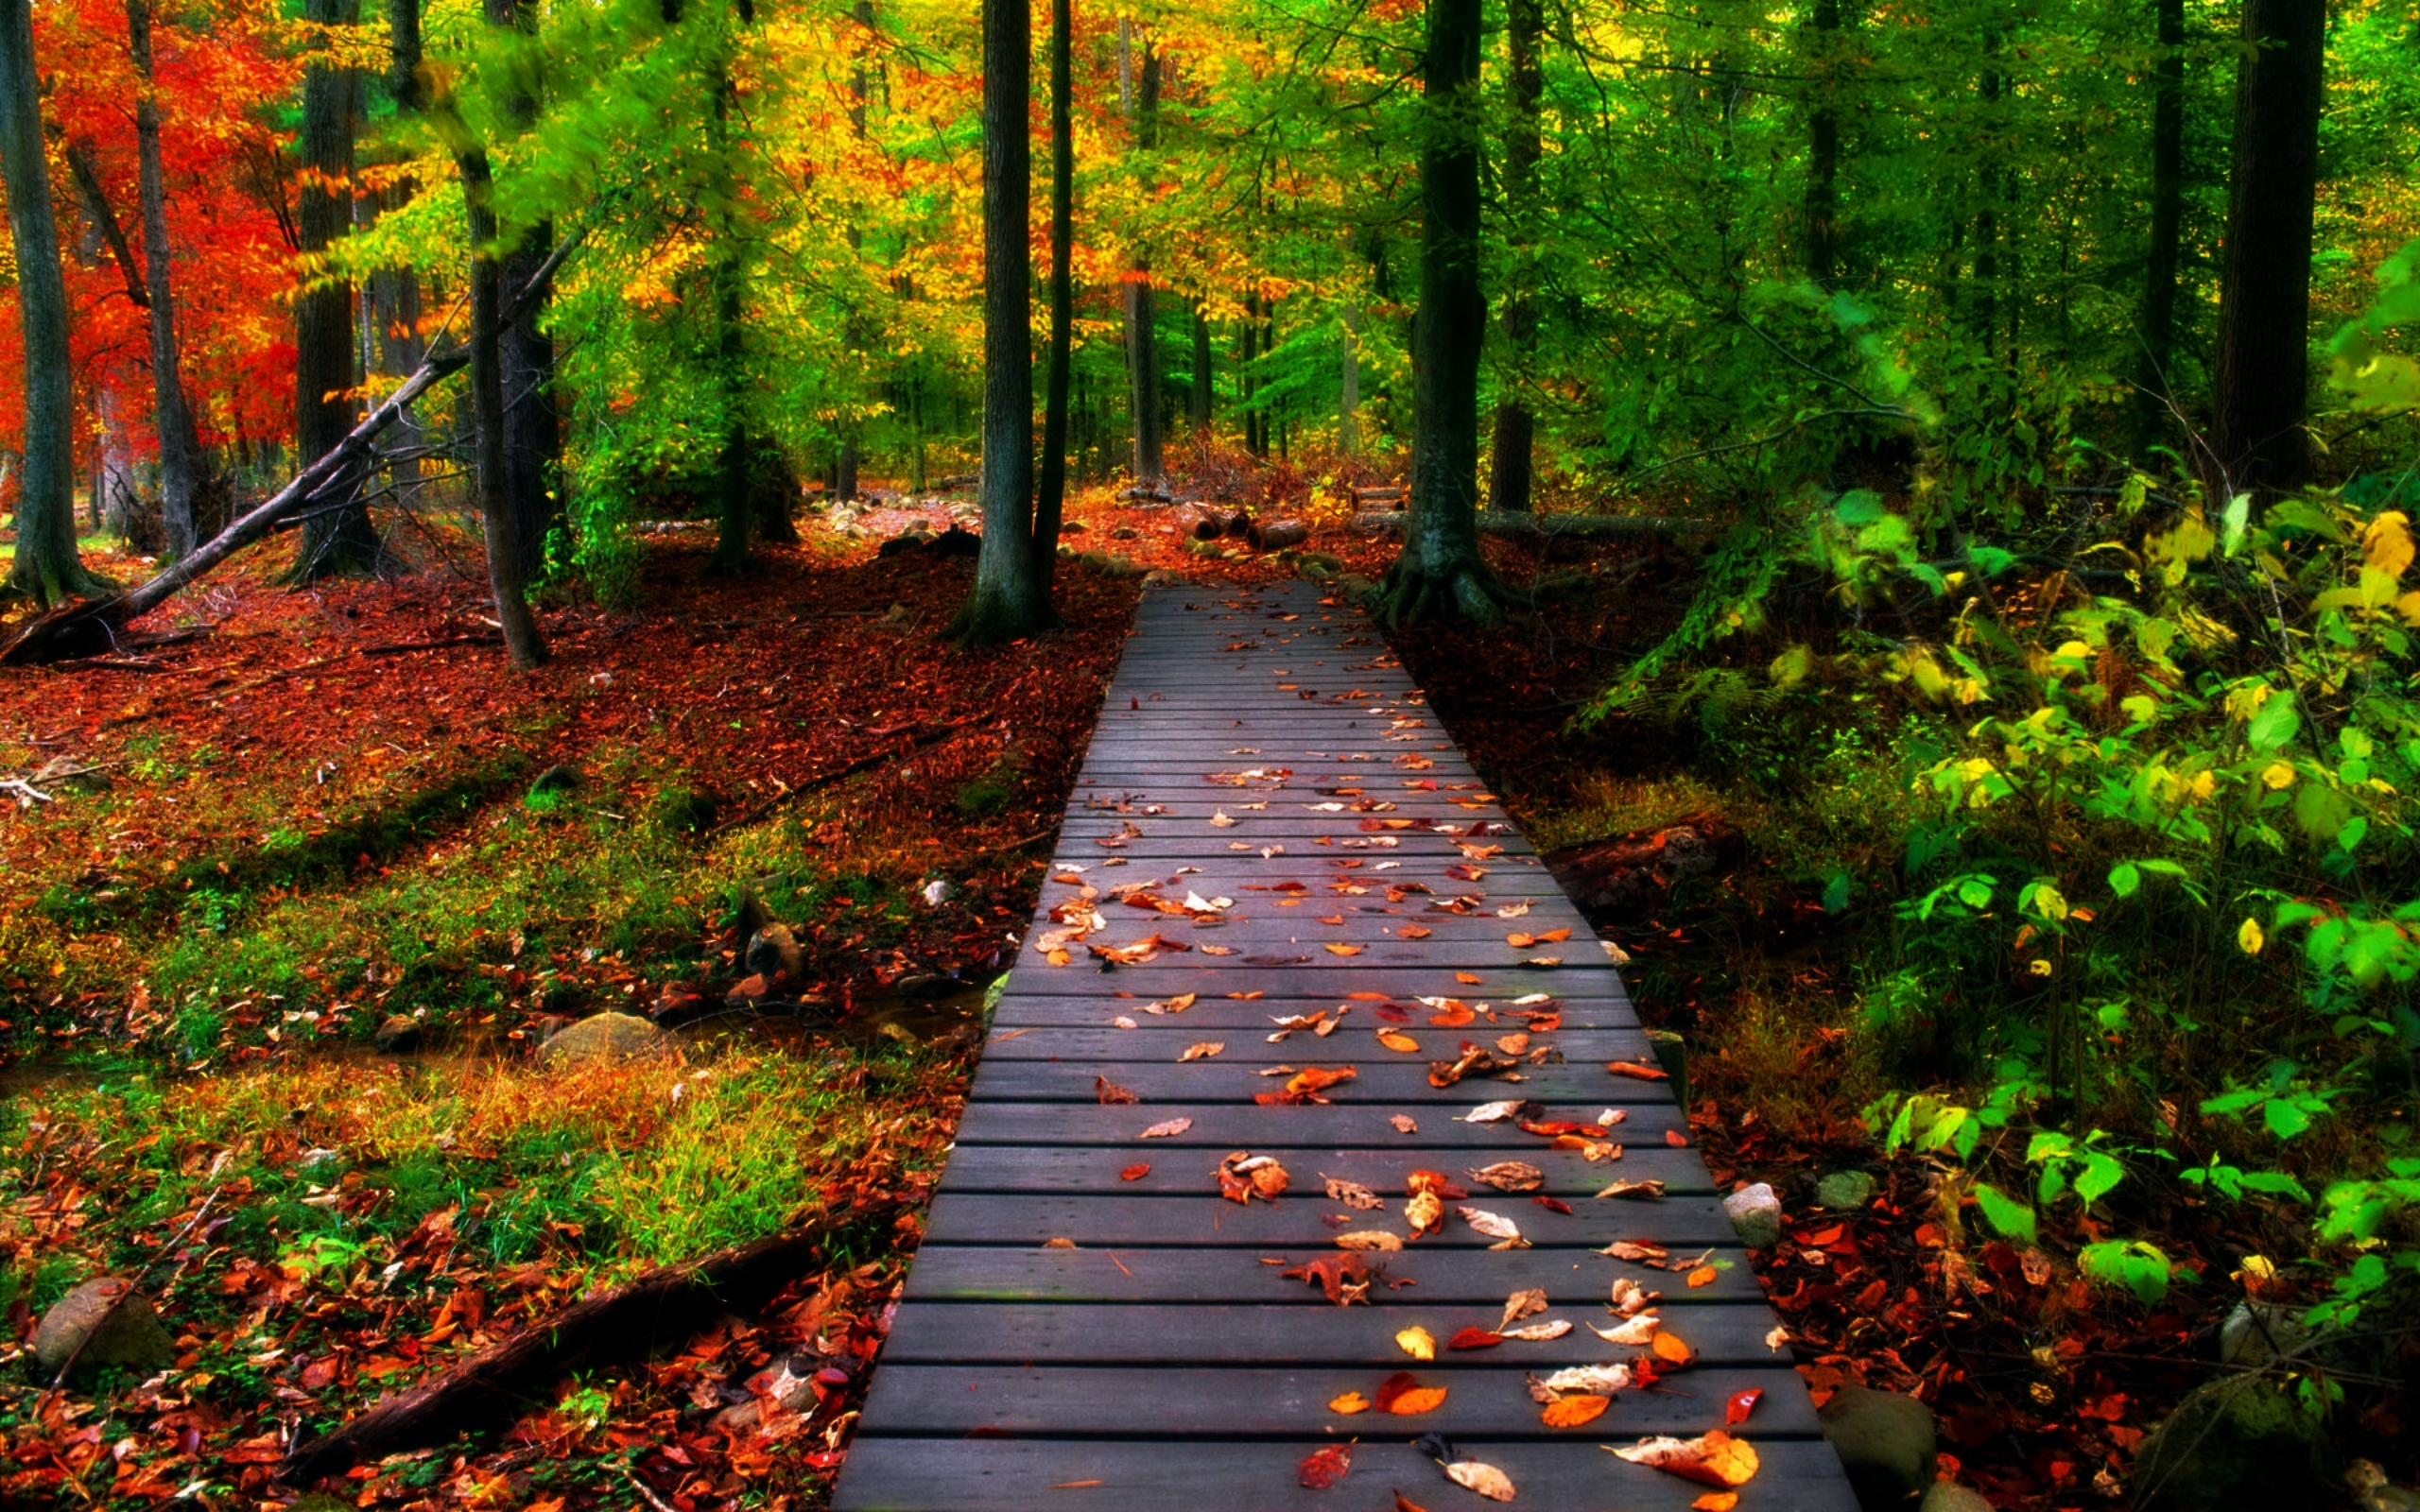 Natural fall. Осень. Тропинка в осеннем лесу. Дорожка в осеннем лесу. Обои осень.